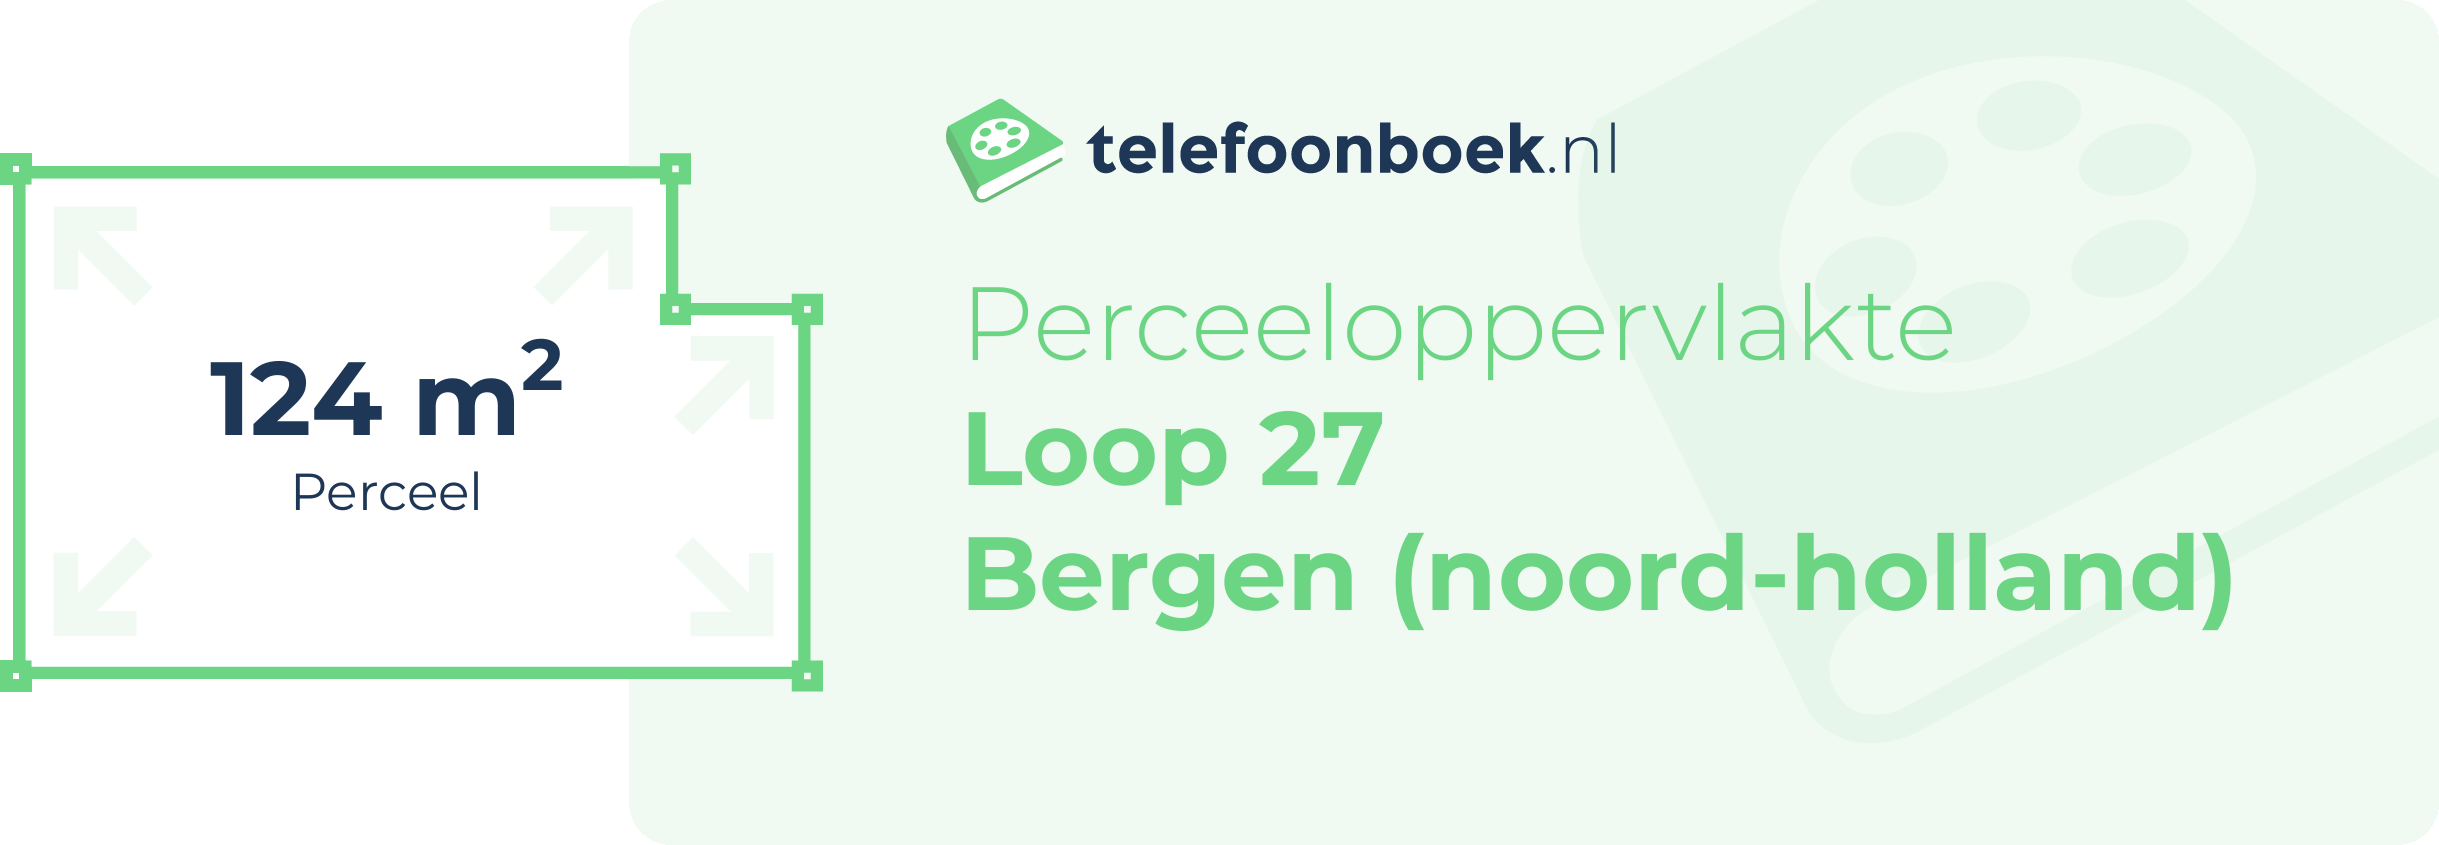 Perceeloppervlakte Loop 27 Bergen (Noord-Holland)